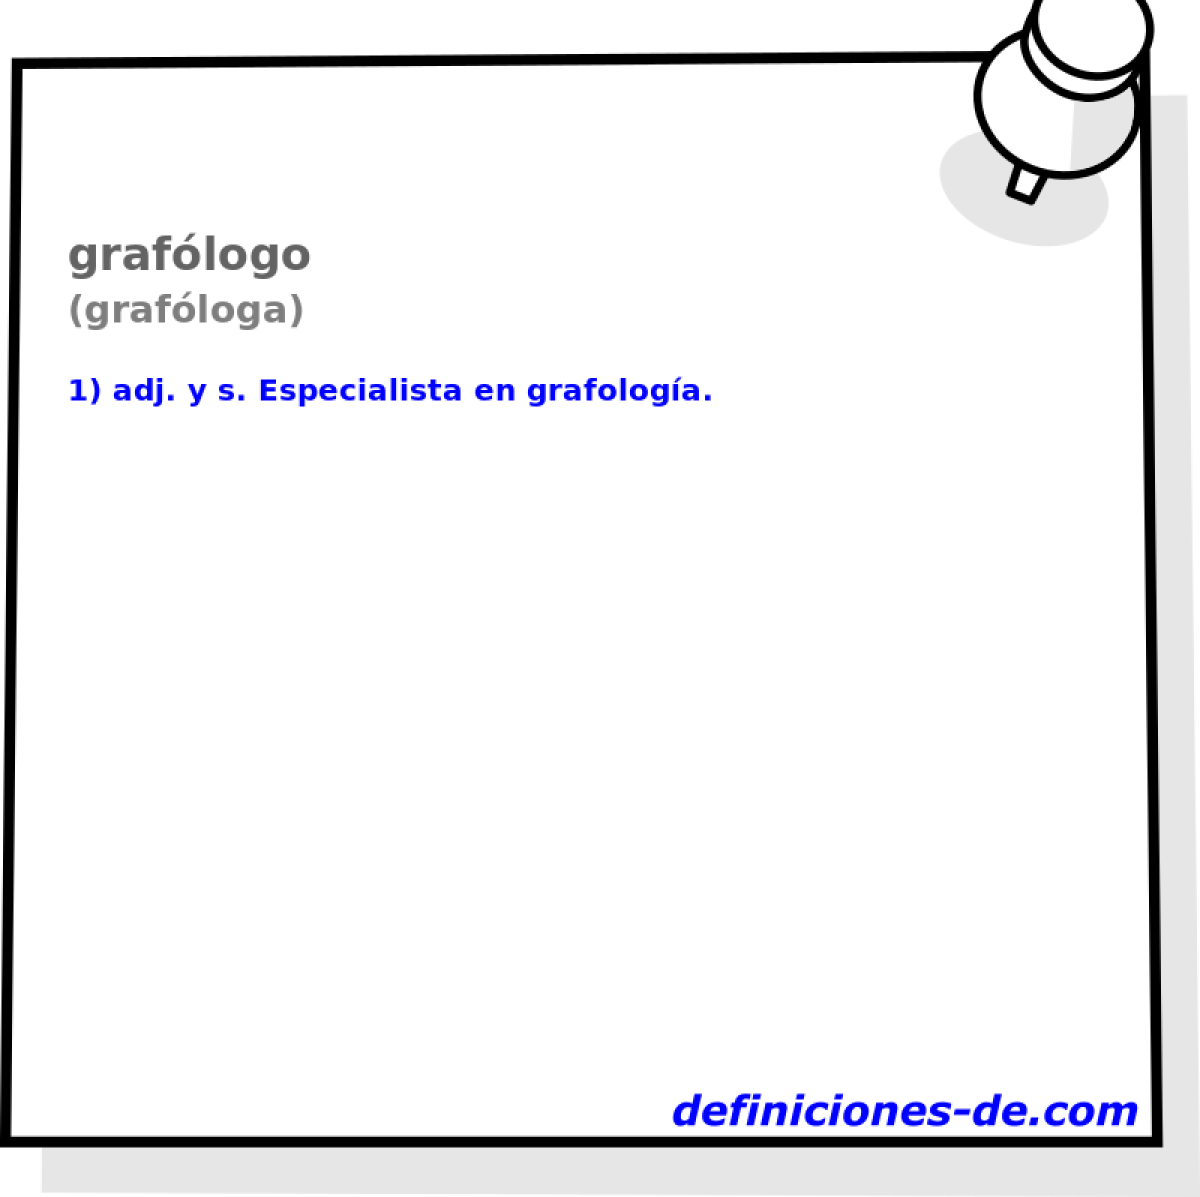 graflogo (grafloga)